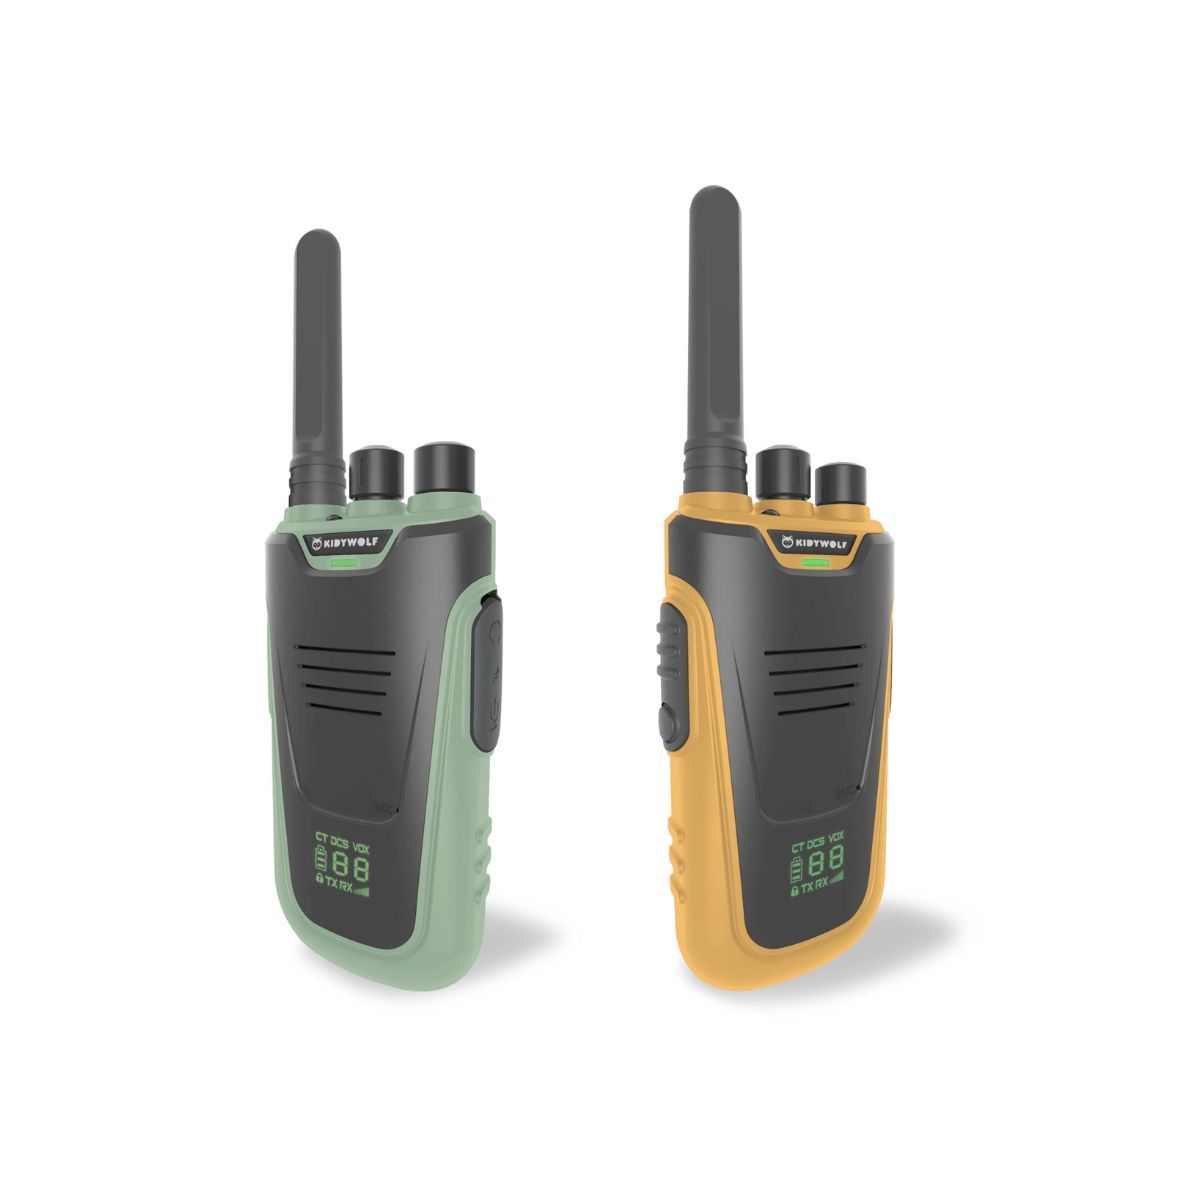 Kidytalk walkie-talkie i orange og grøn med lang rækkevidde